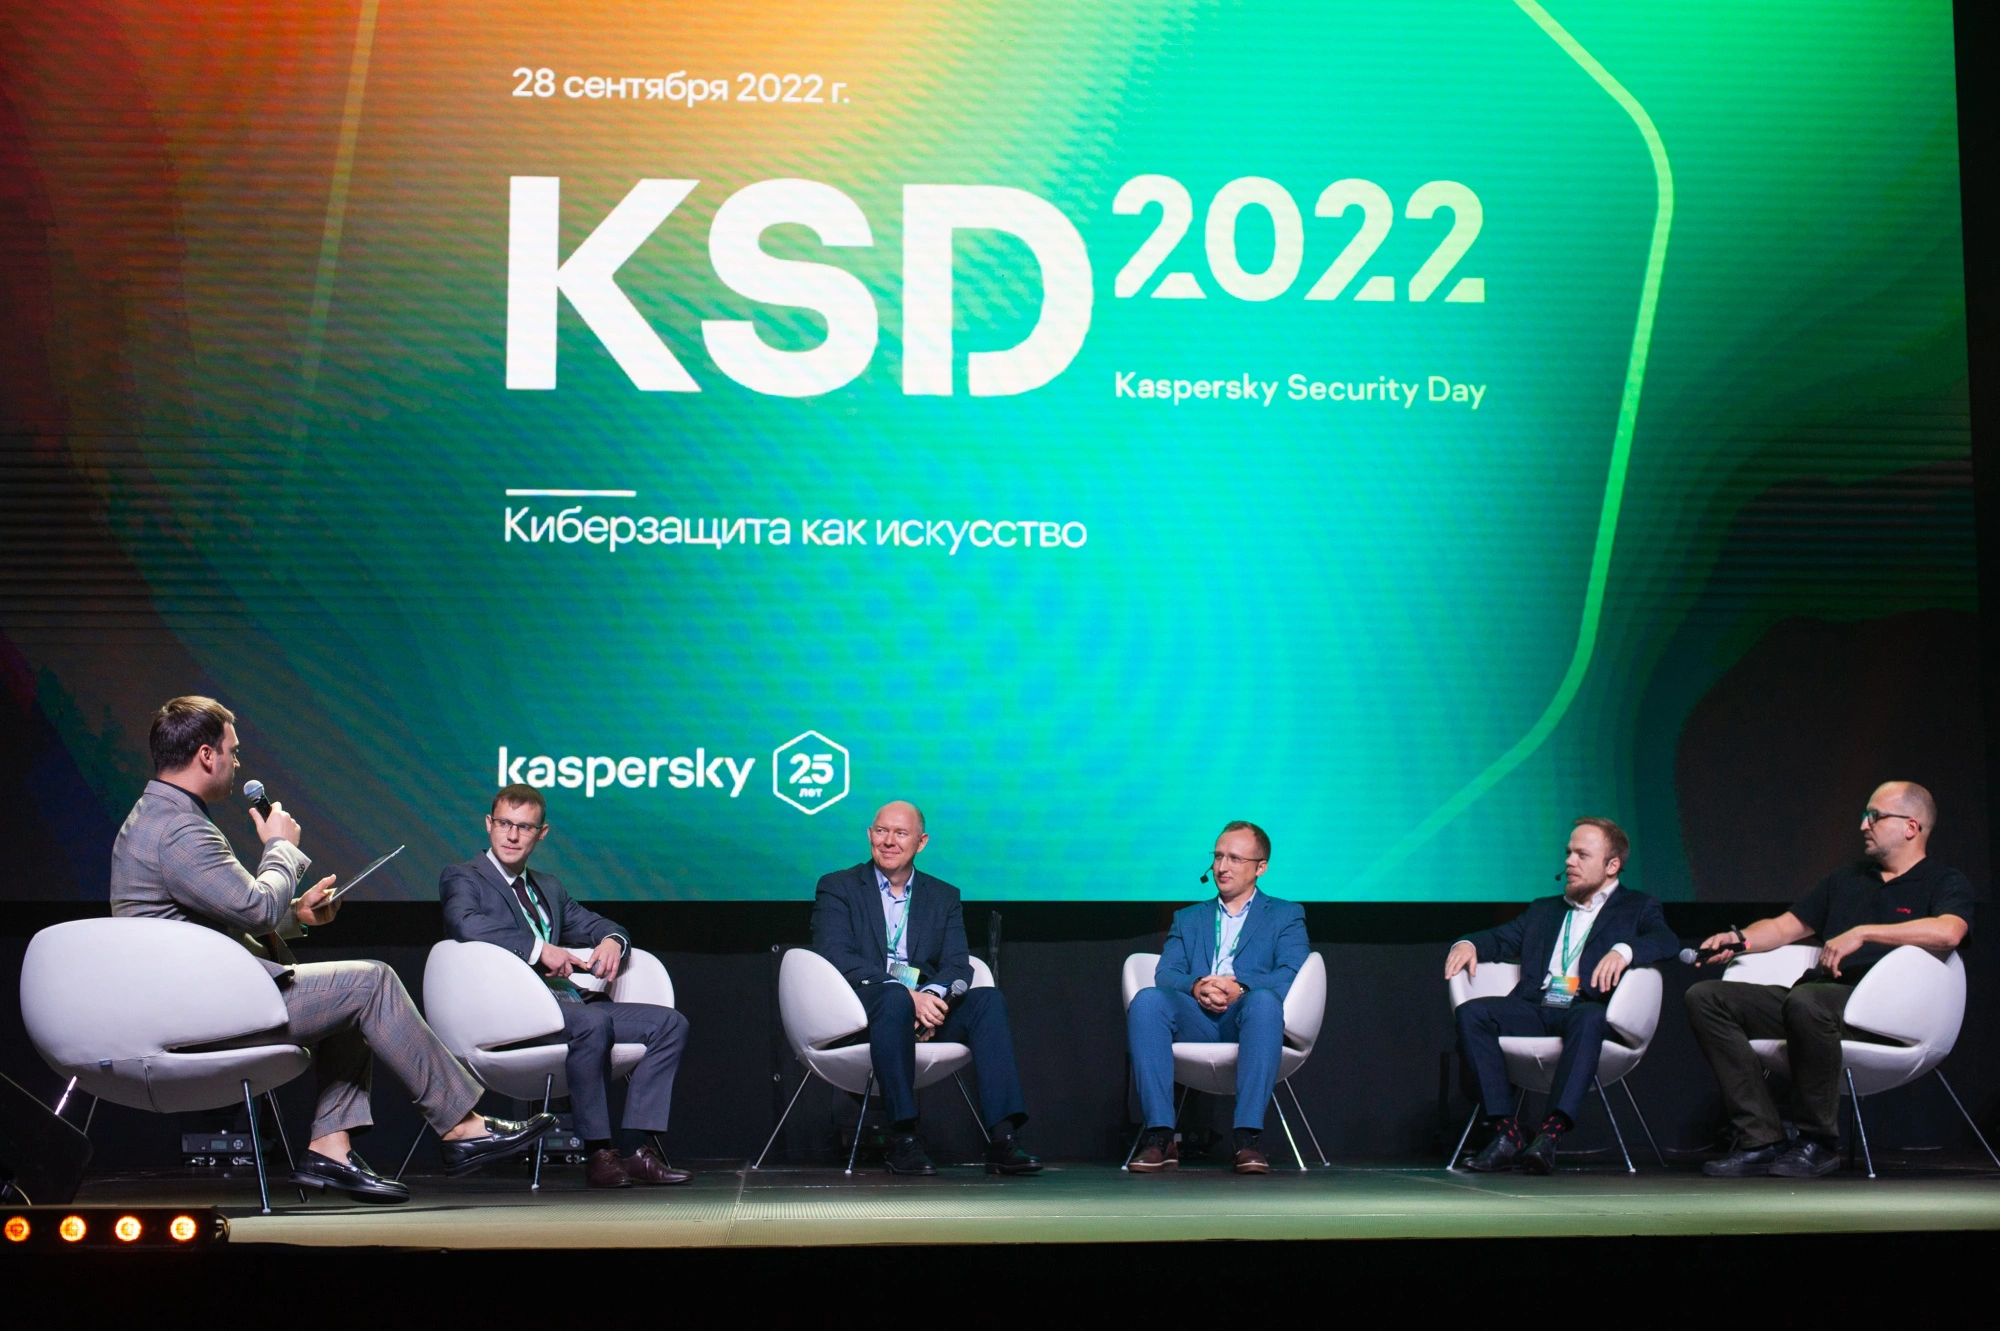 МТС Cloud рассказал о борьбе с киберугрозами на Kaspersky Security Day